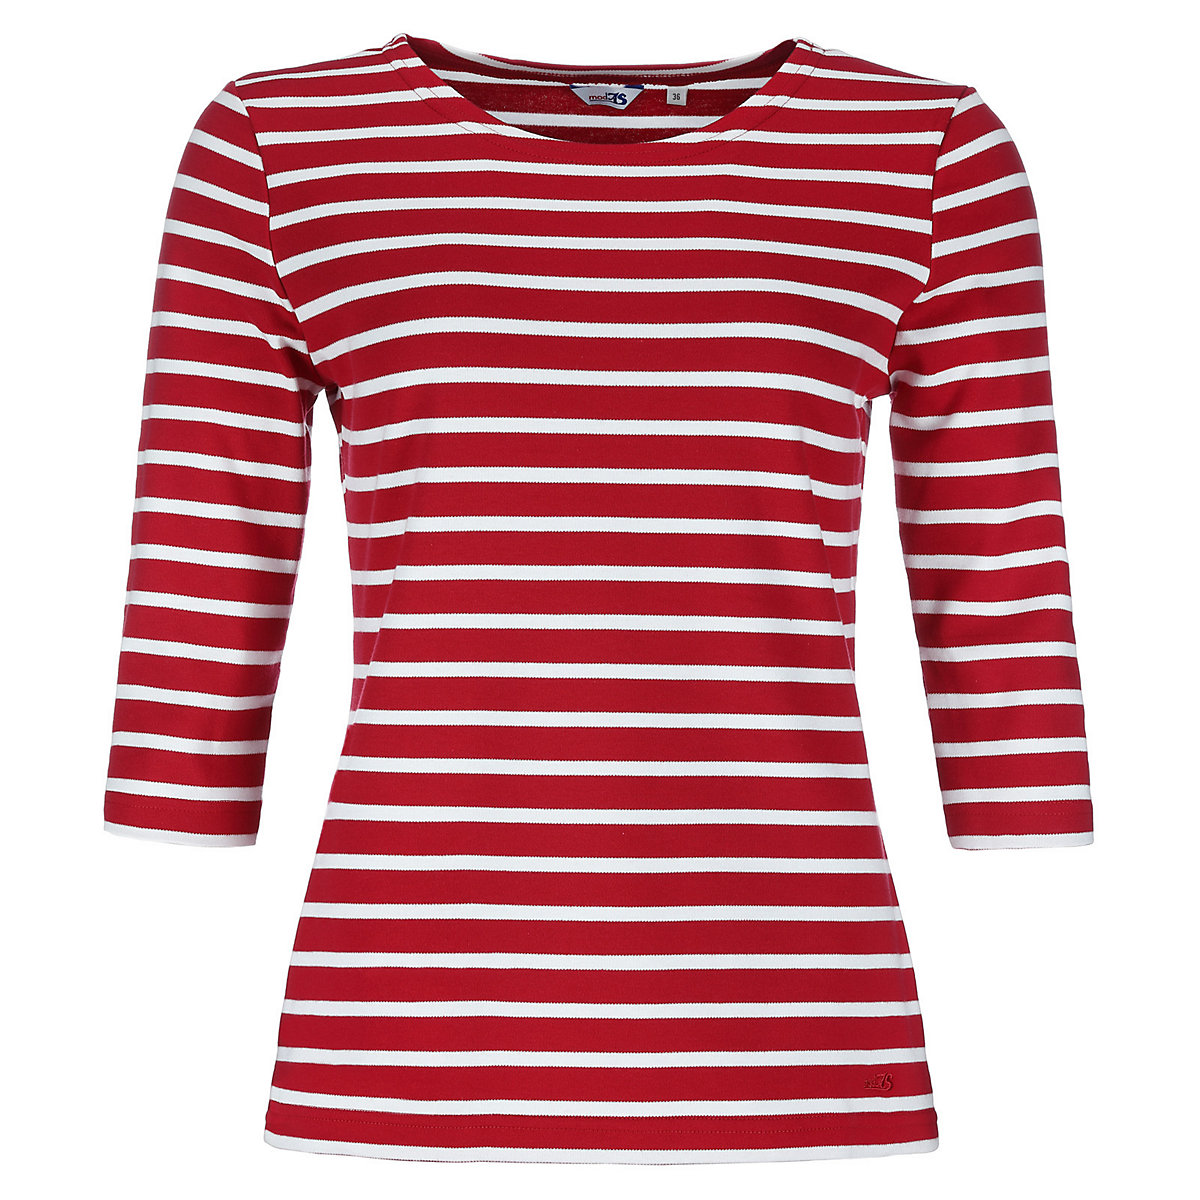 modAS Bretonisches Shirt mit 3/4-Arm und Streifen Ringelshirt mit Rundhalsausschnitt (02) rot / weiß rot/weiß